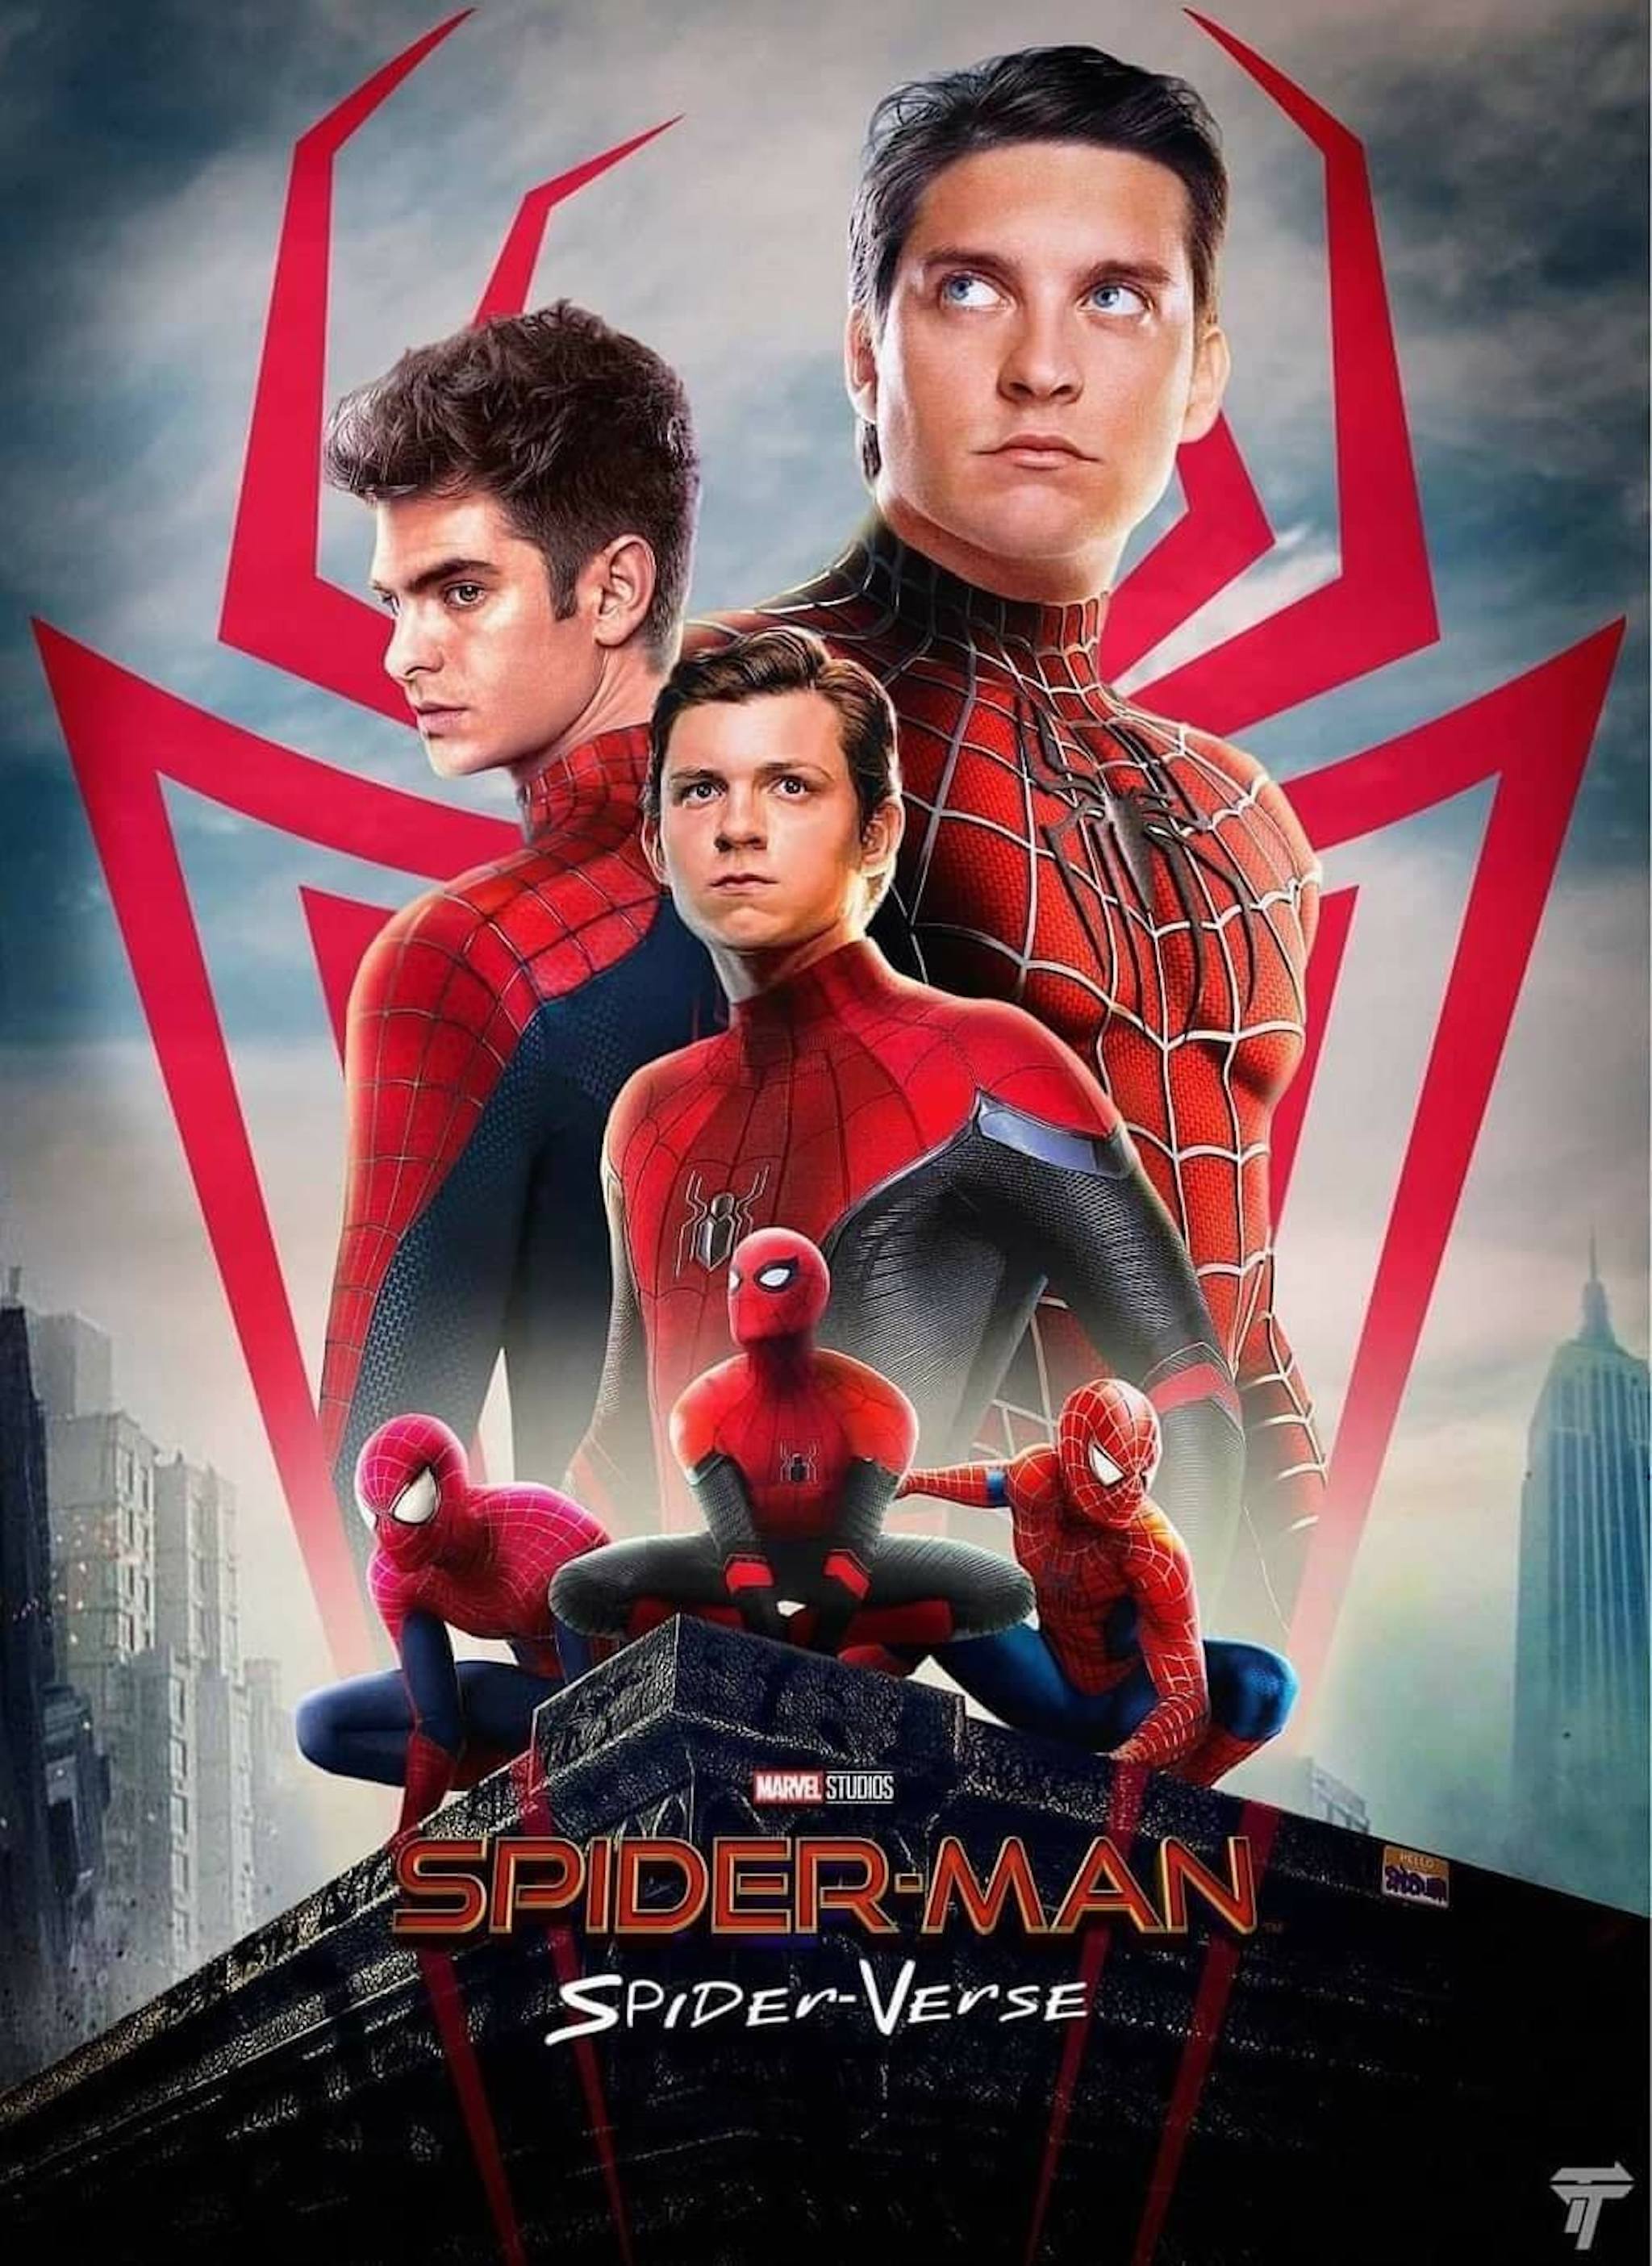 Tobey Maguire và Andrew Garfield trở lại trong vai người nhện sẽ là sự kiện được mong đợi trong thời gian tới. Hãy cùng đón xem họ sẽ tái hiện nhân vật của mình như thế nào trong phiên bản mới của Spider Man nhé.